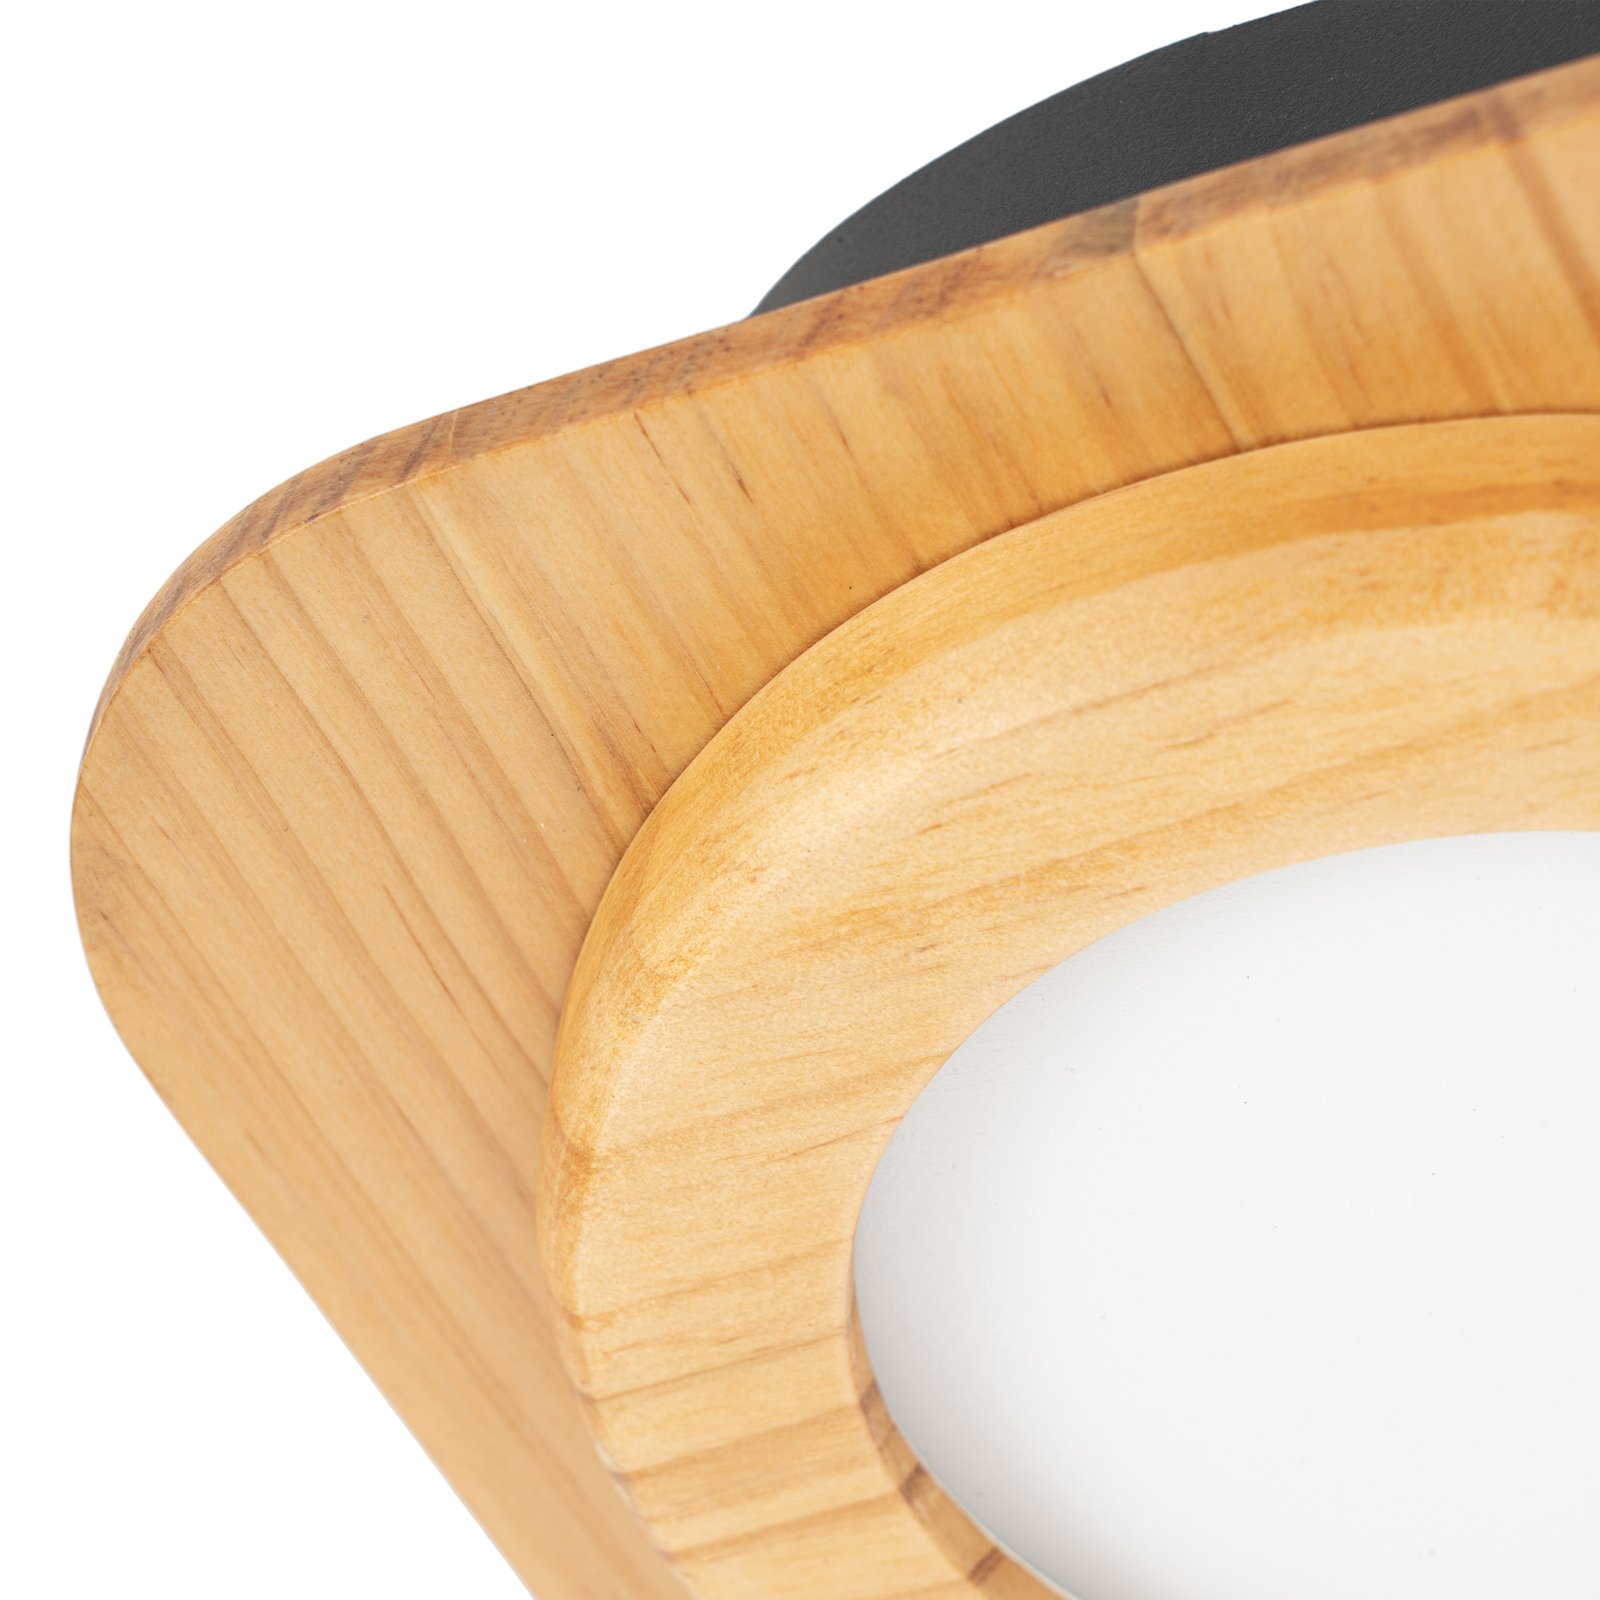 Lindby Joren-LED-spotti puuta, 4-lamppuinen pyöreä